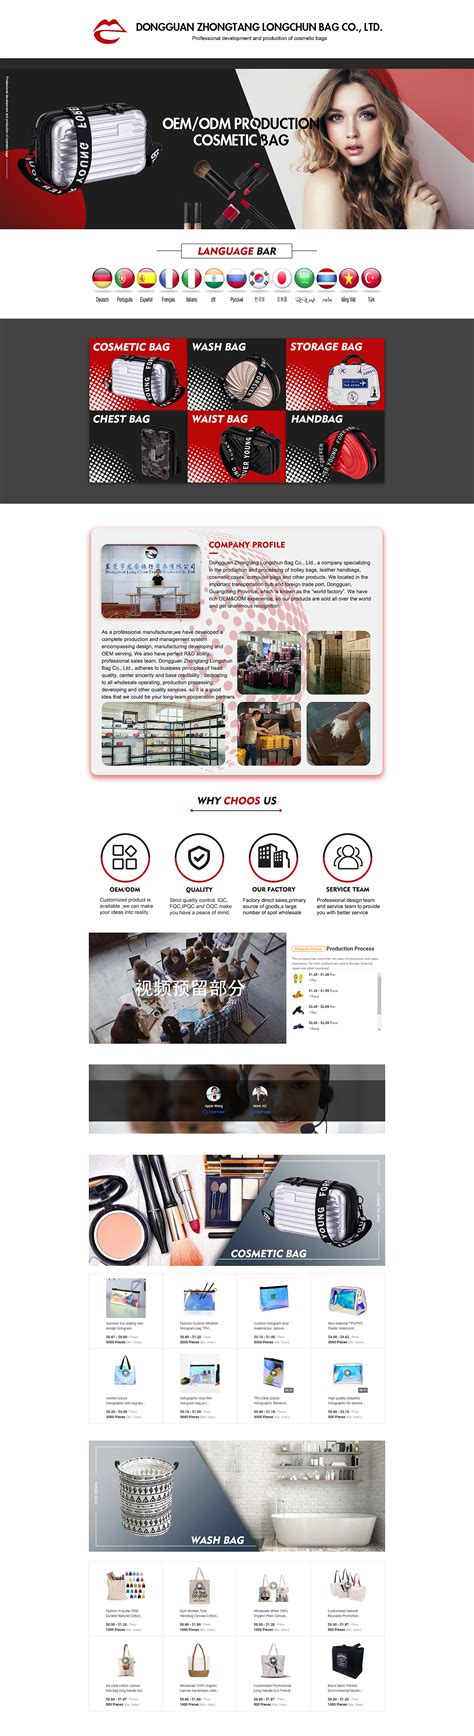 阿里巴巴国际站如何添加添加主营类目 阿里巴巴国际站全屏代码 - 一秒钟美工助手官方网站